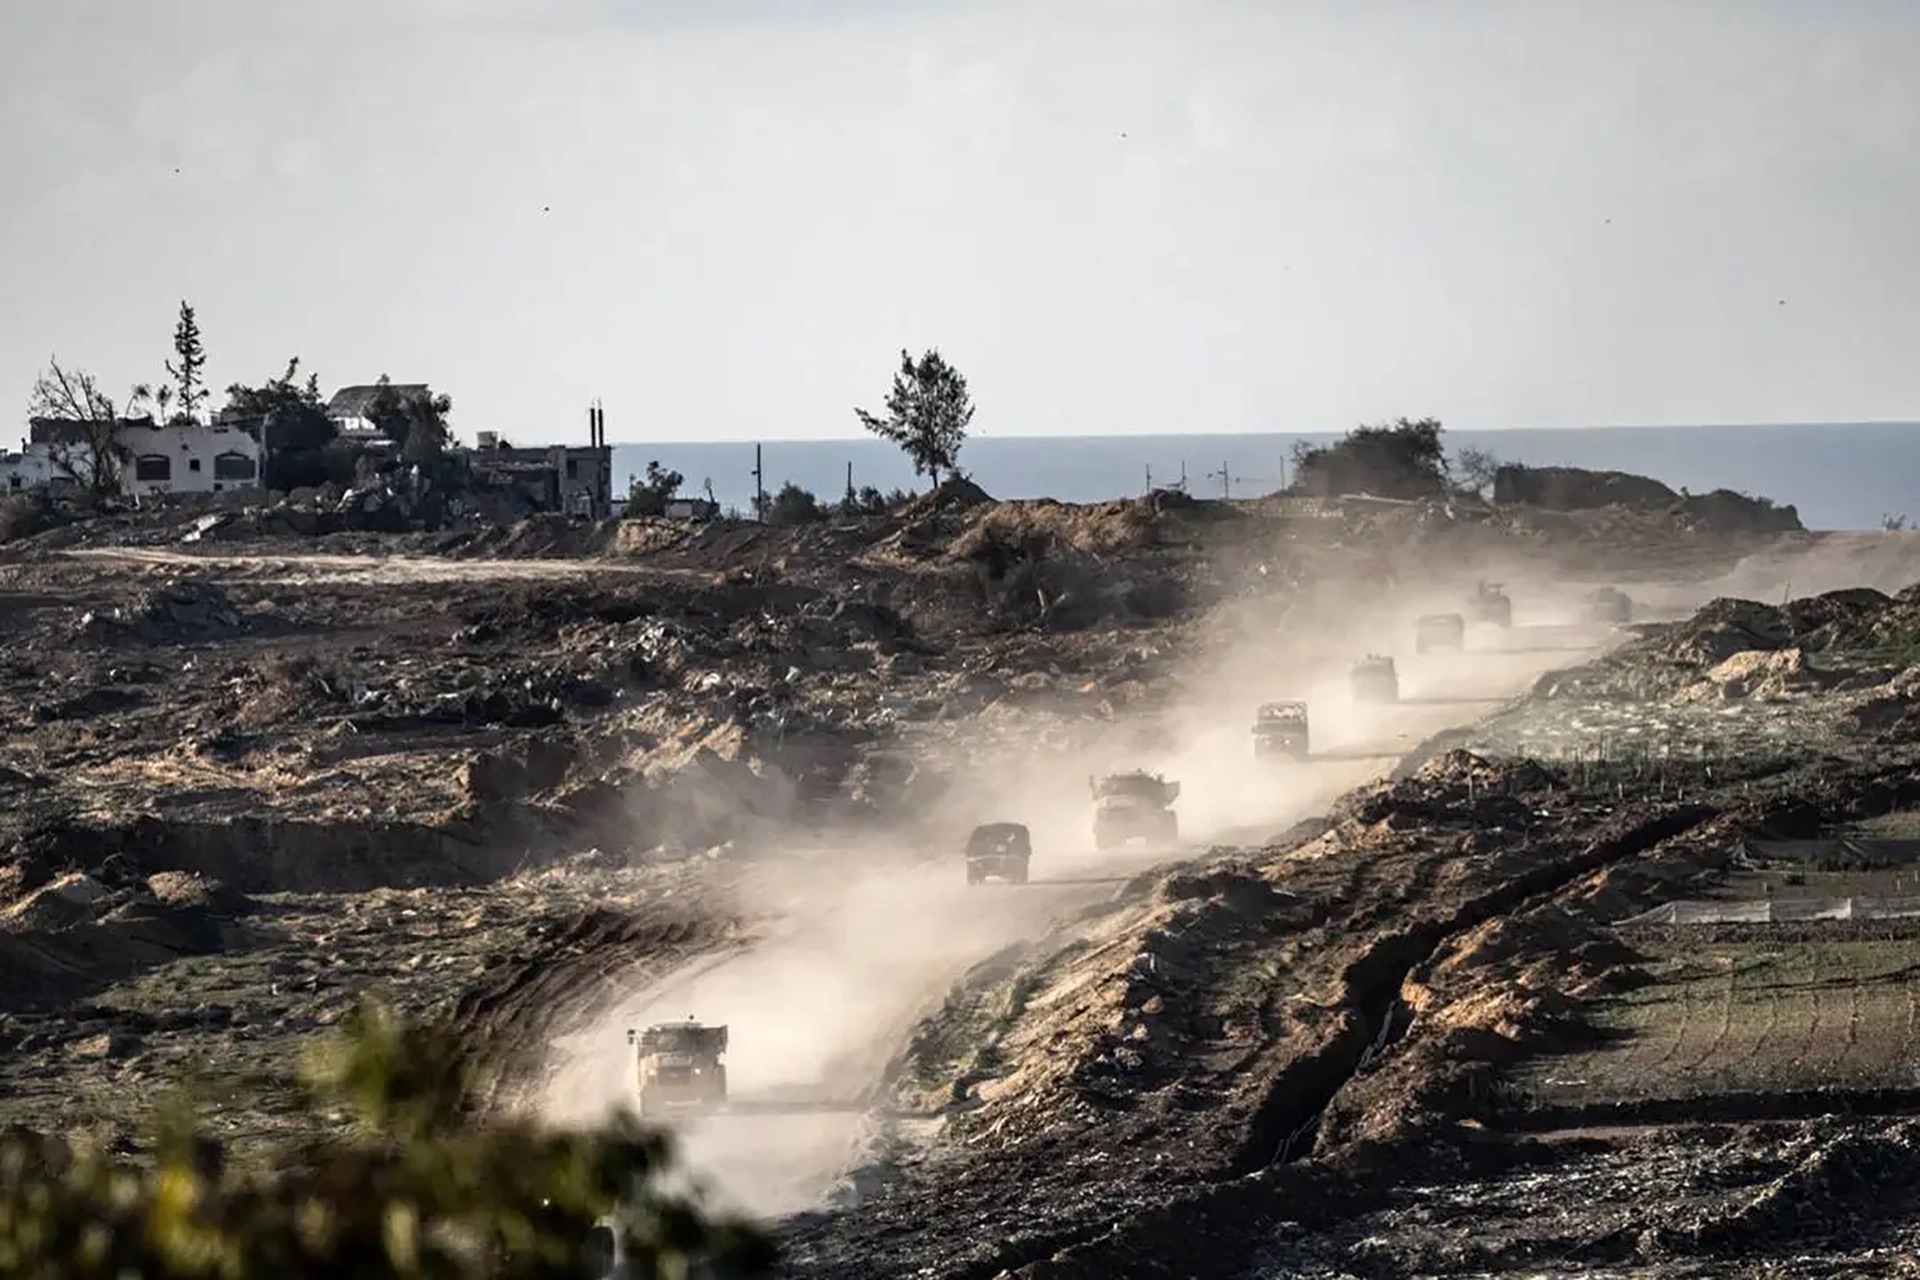 جيش الاحتلال ينشئ طريقا لفصل شمال قطاع غزة عن بقية أجزائه | أخبار – البوكس نيوز